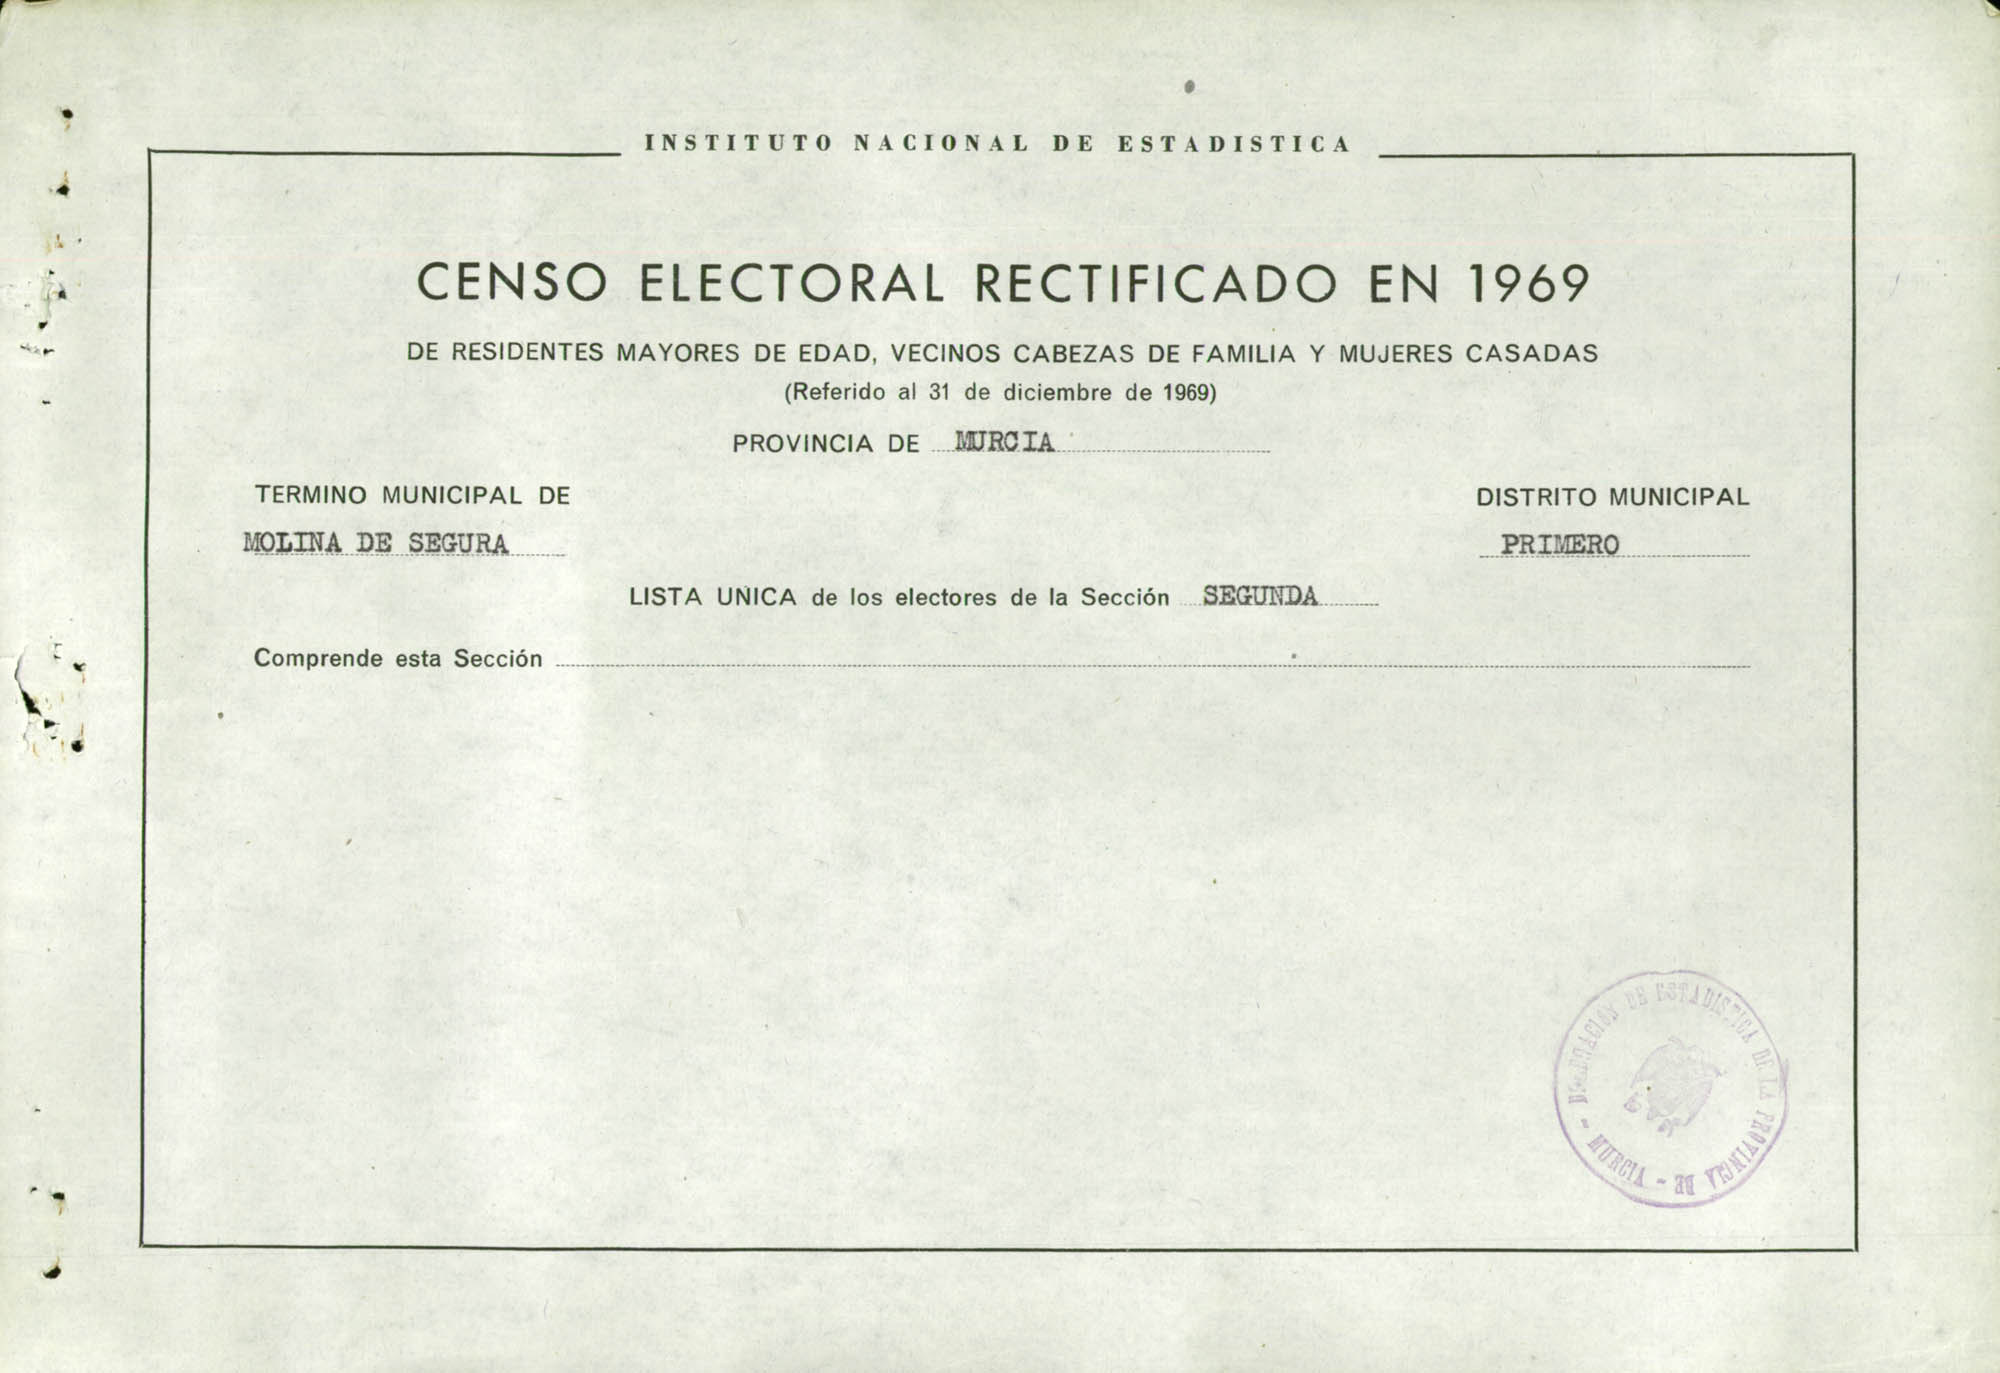 Censo electoral rectificado en 1969: listas definitivas de Molina de Segura, Distrito 1º, sección 2ª.